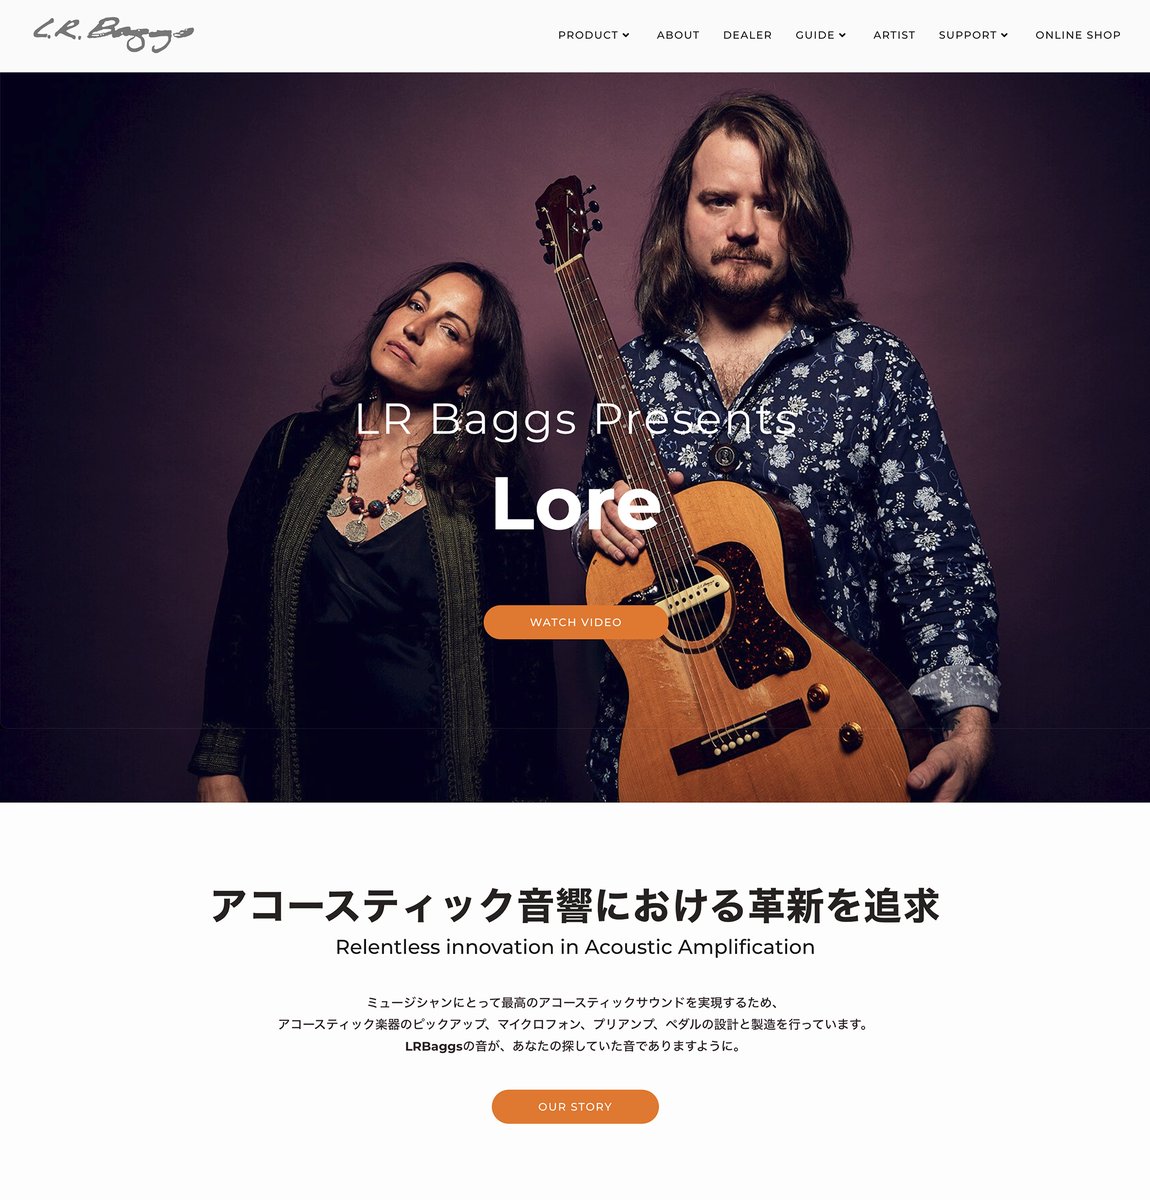 アコースティック楽器用ピックアップやプリアンプでお馴染みのエルアールバッグス／L.R. Baggs。

革新的な製品開発だけでなくウェブデザインも独創的です。日本語サイトをアップデートしました。

lrbaggsjapan.com

#lrbaggs #jesinternational